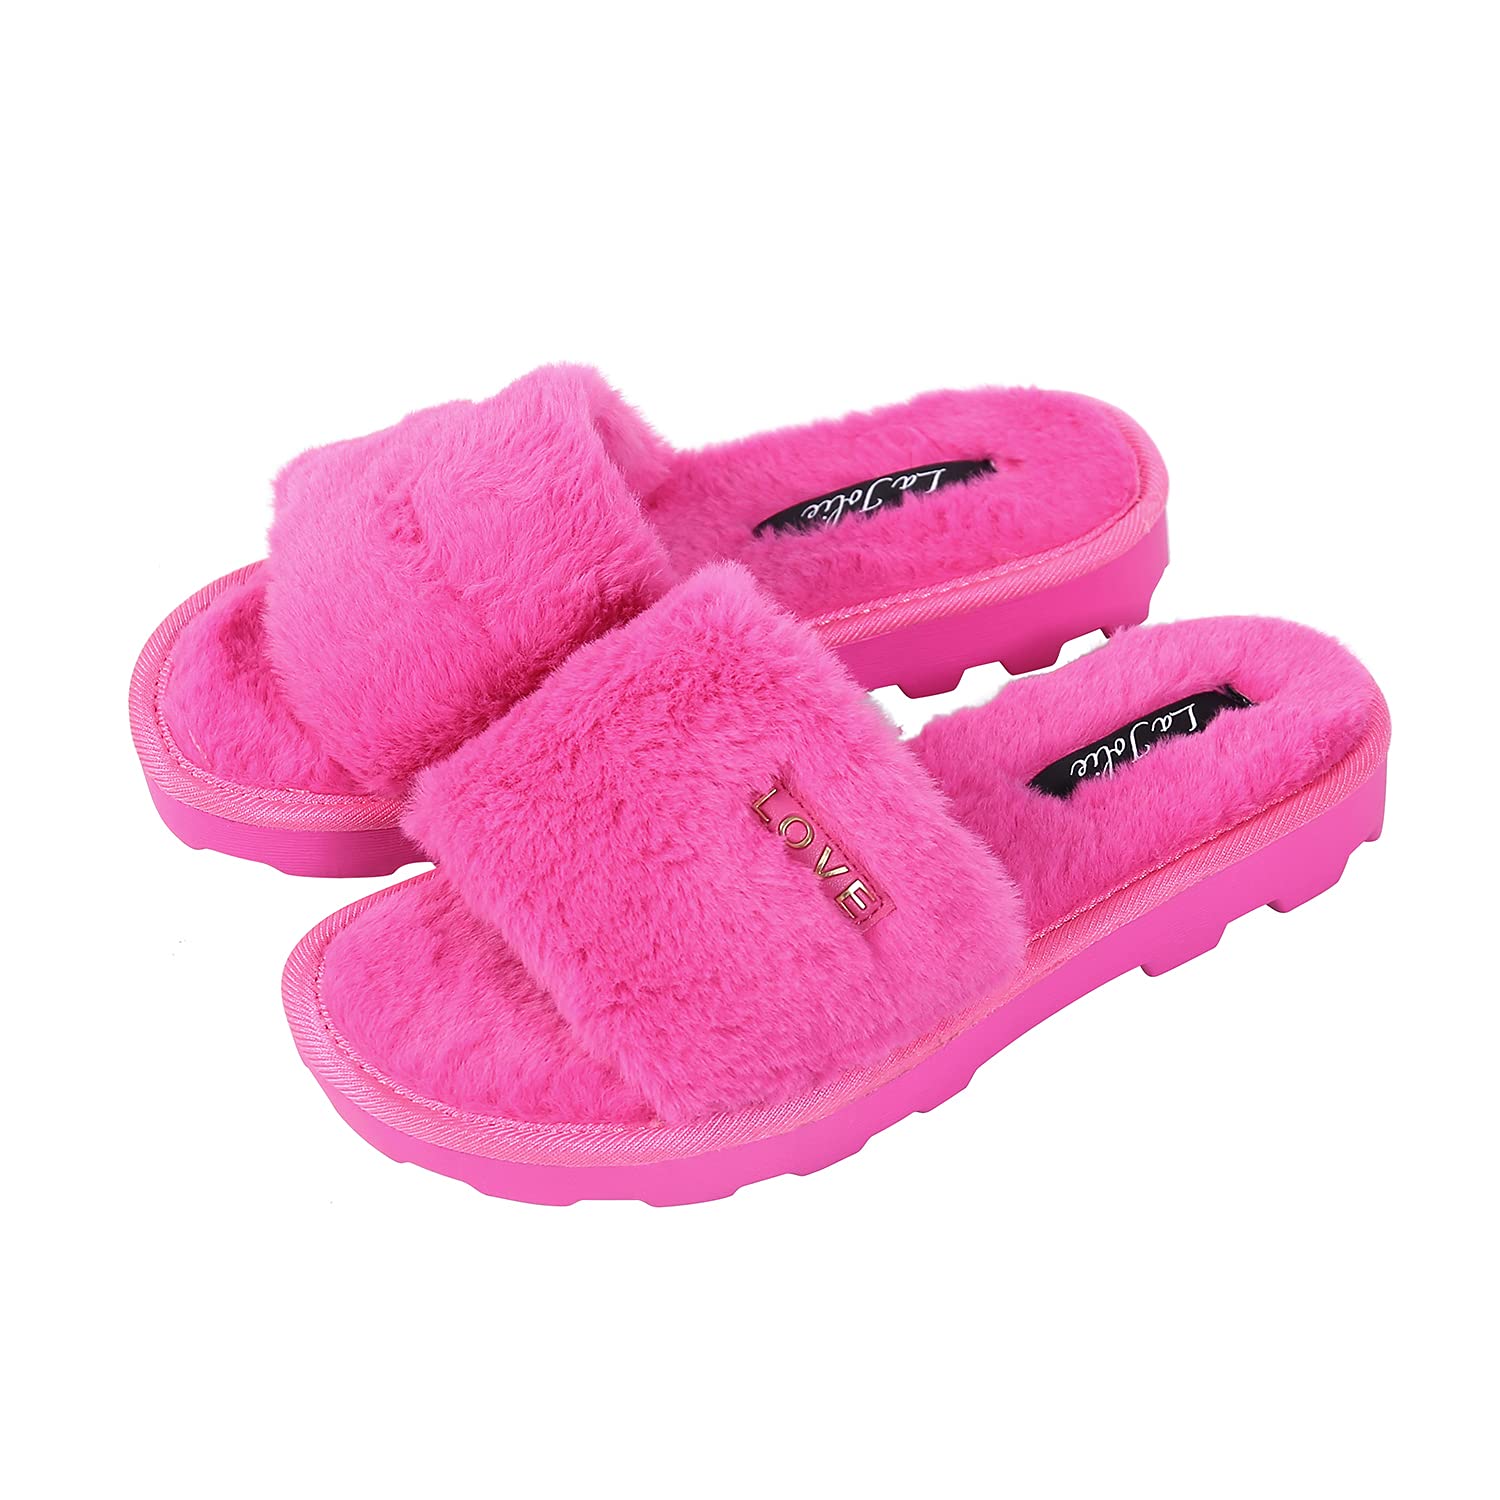 La Jolie Women's Pink Faux Fur House Slippers